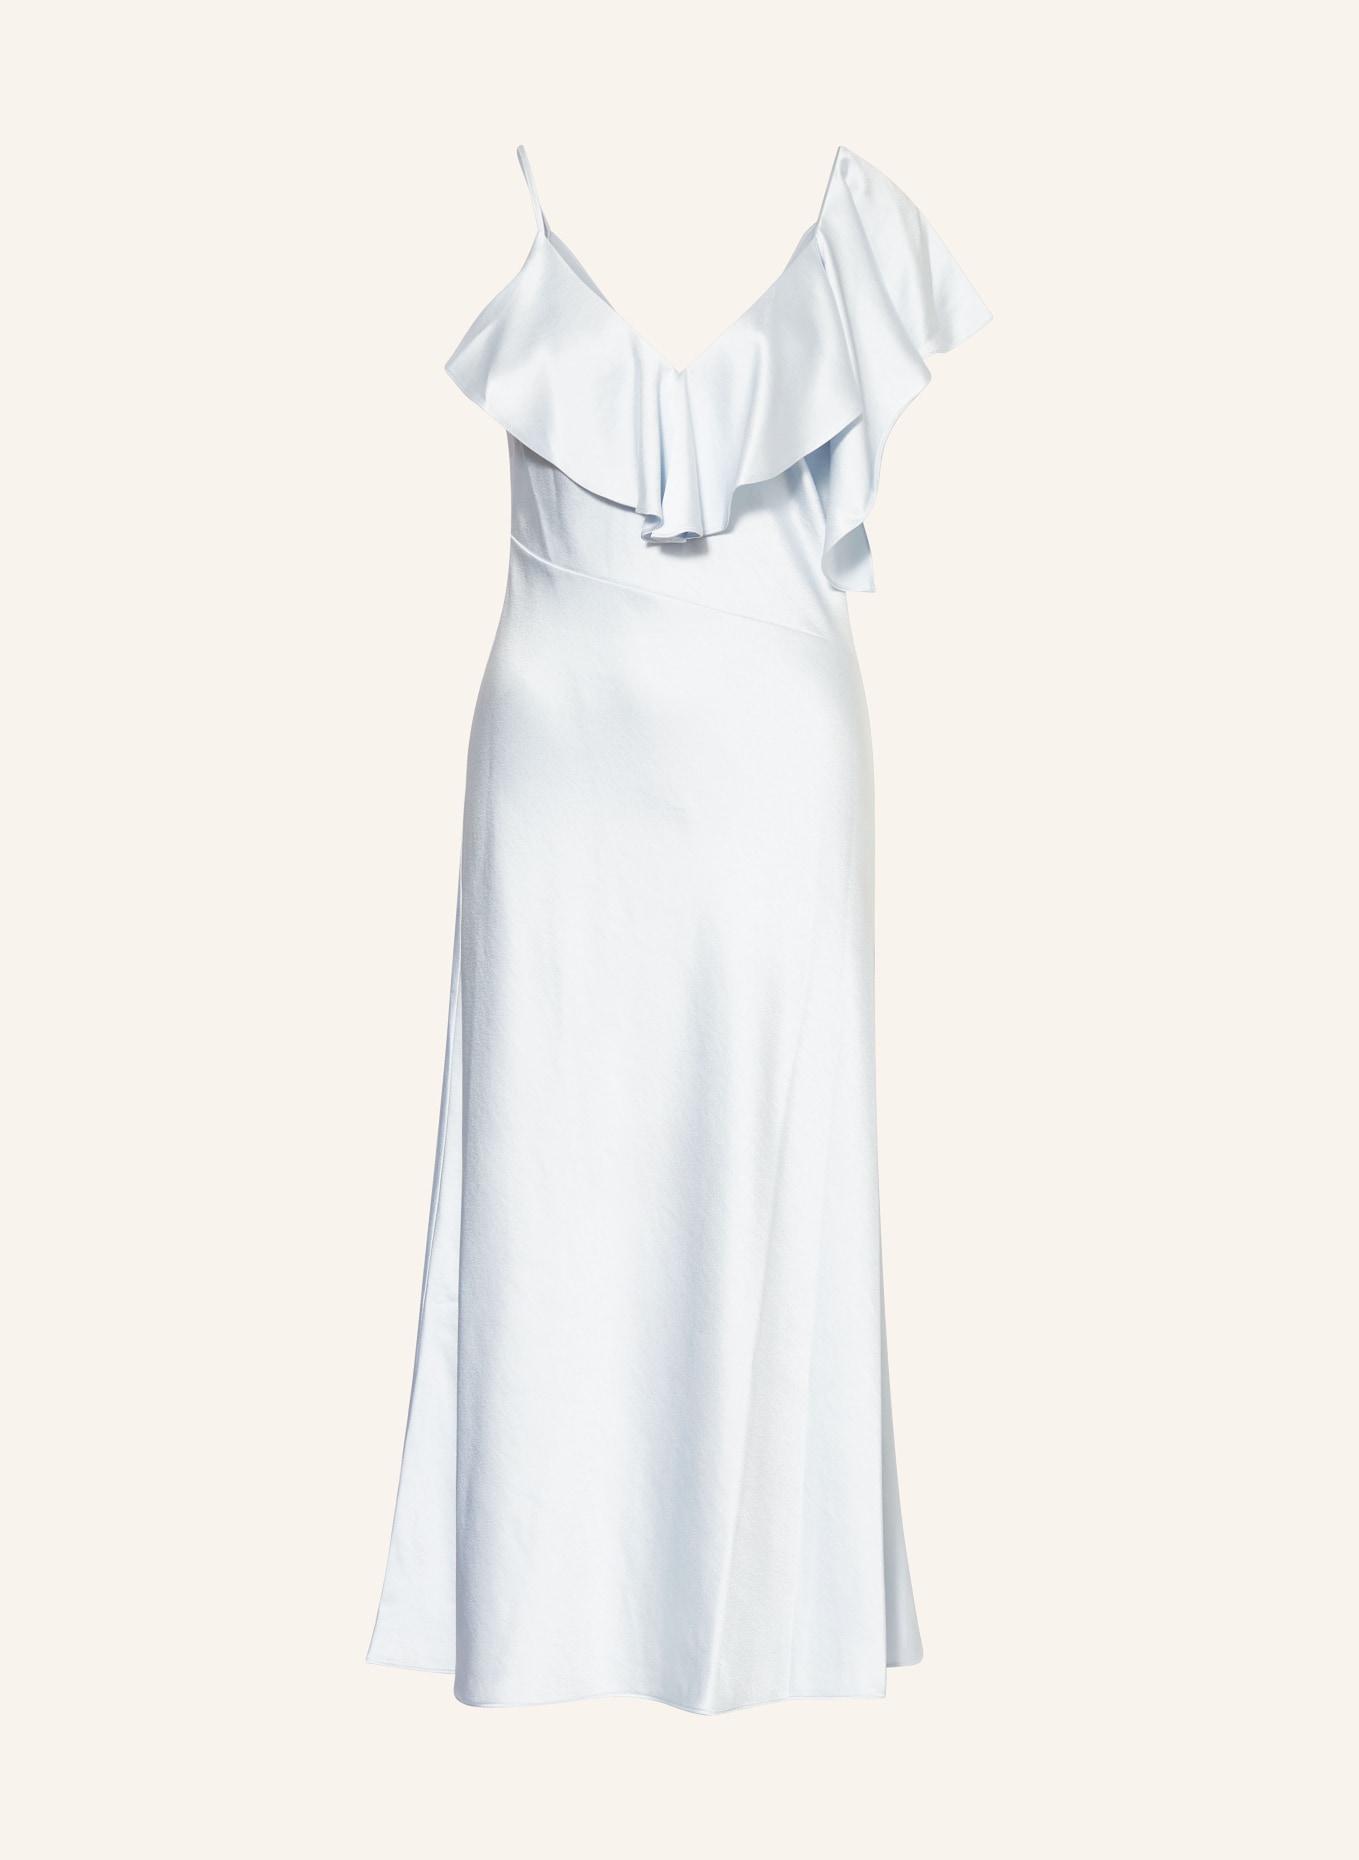 TED BAKER Kleid KEOMI mit Volants, Farbe: HELLBLAU (Bild 1)